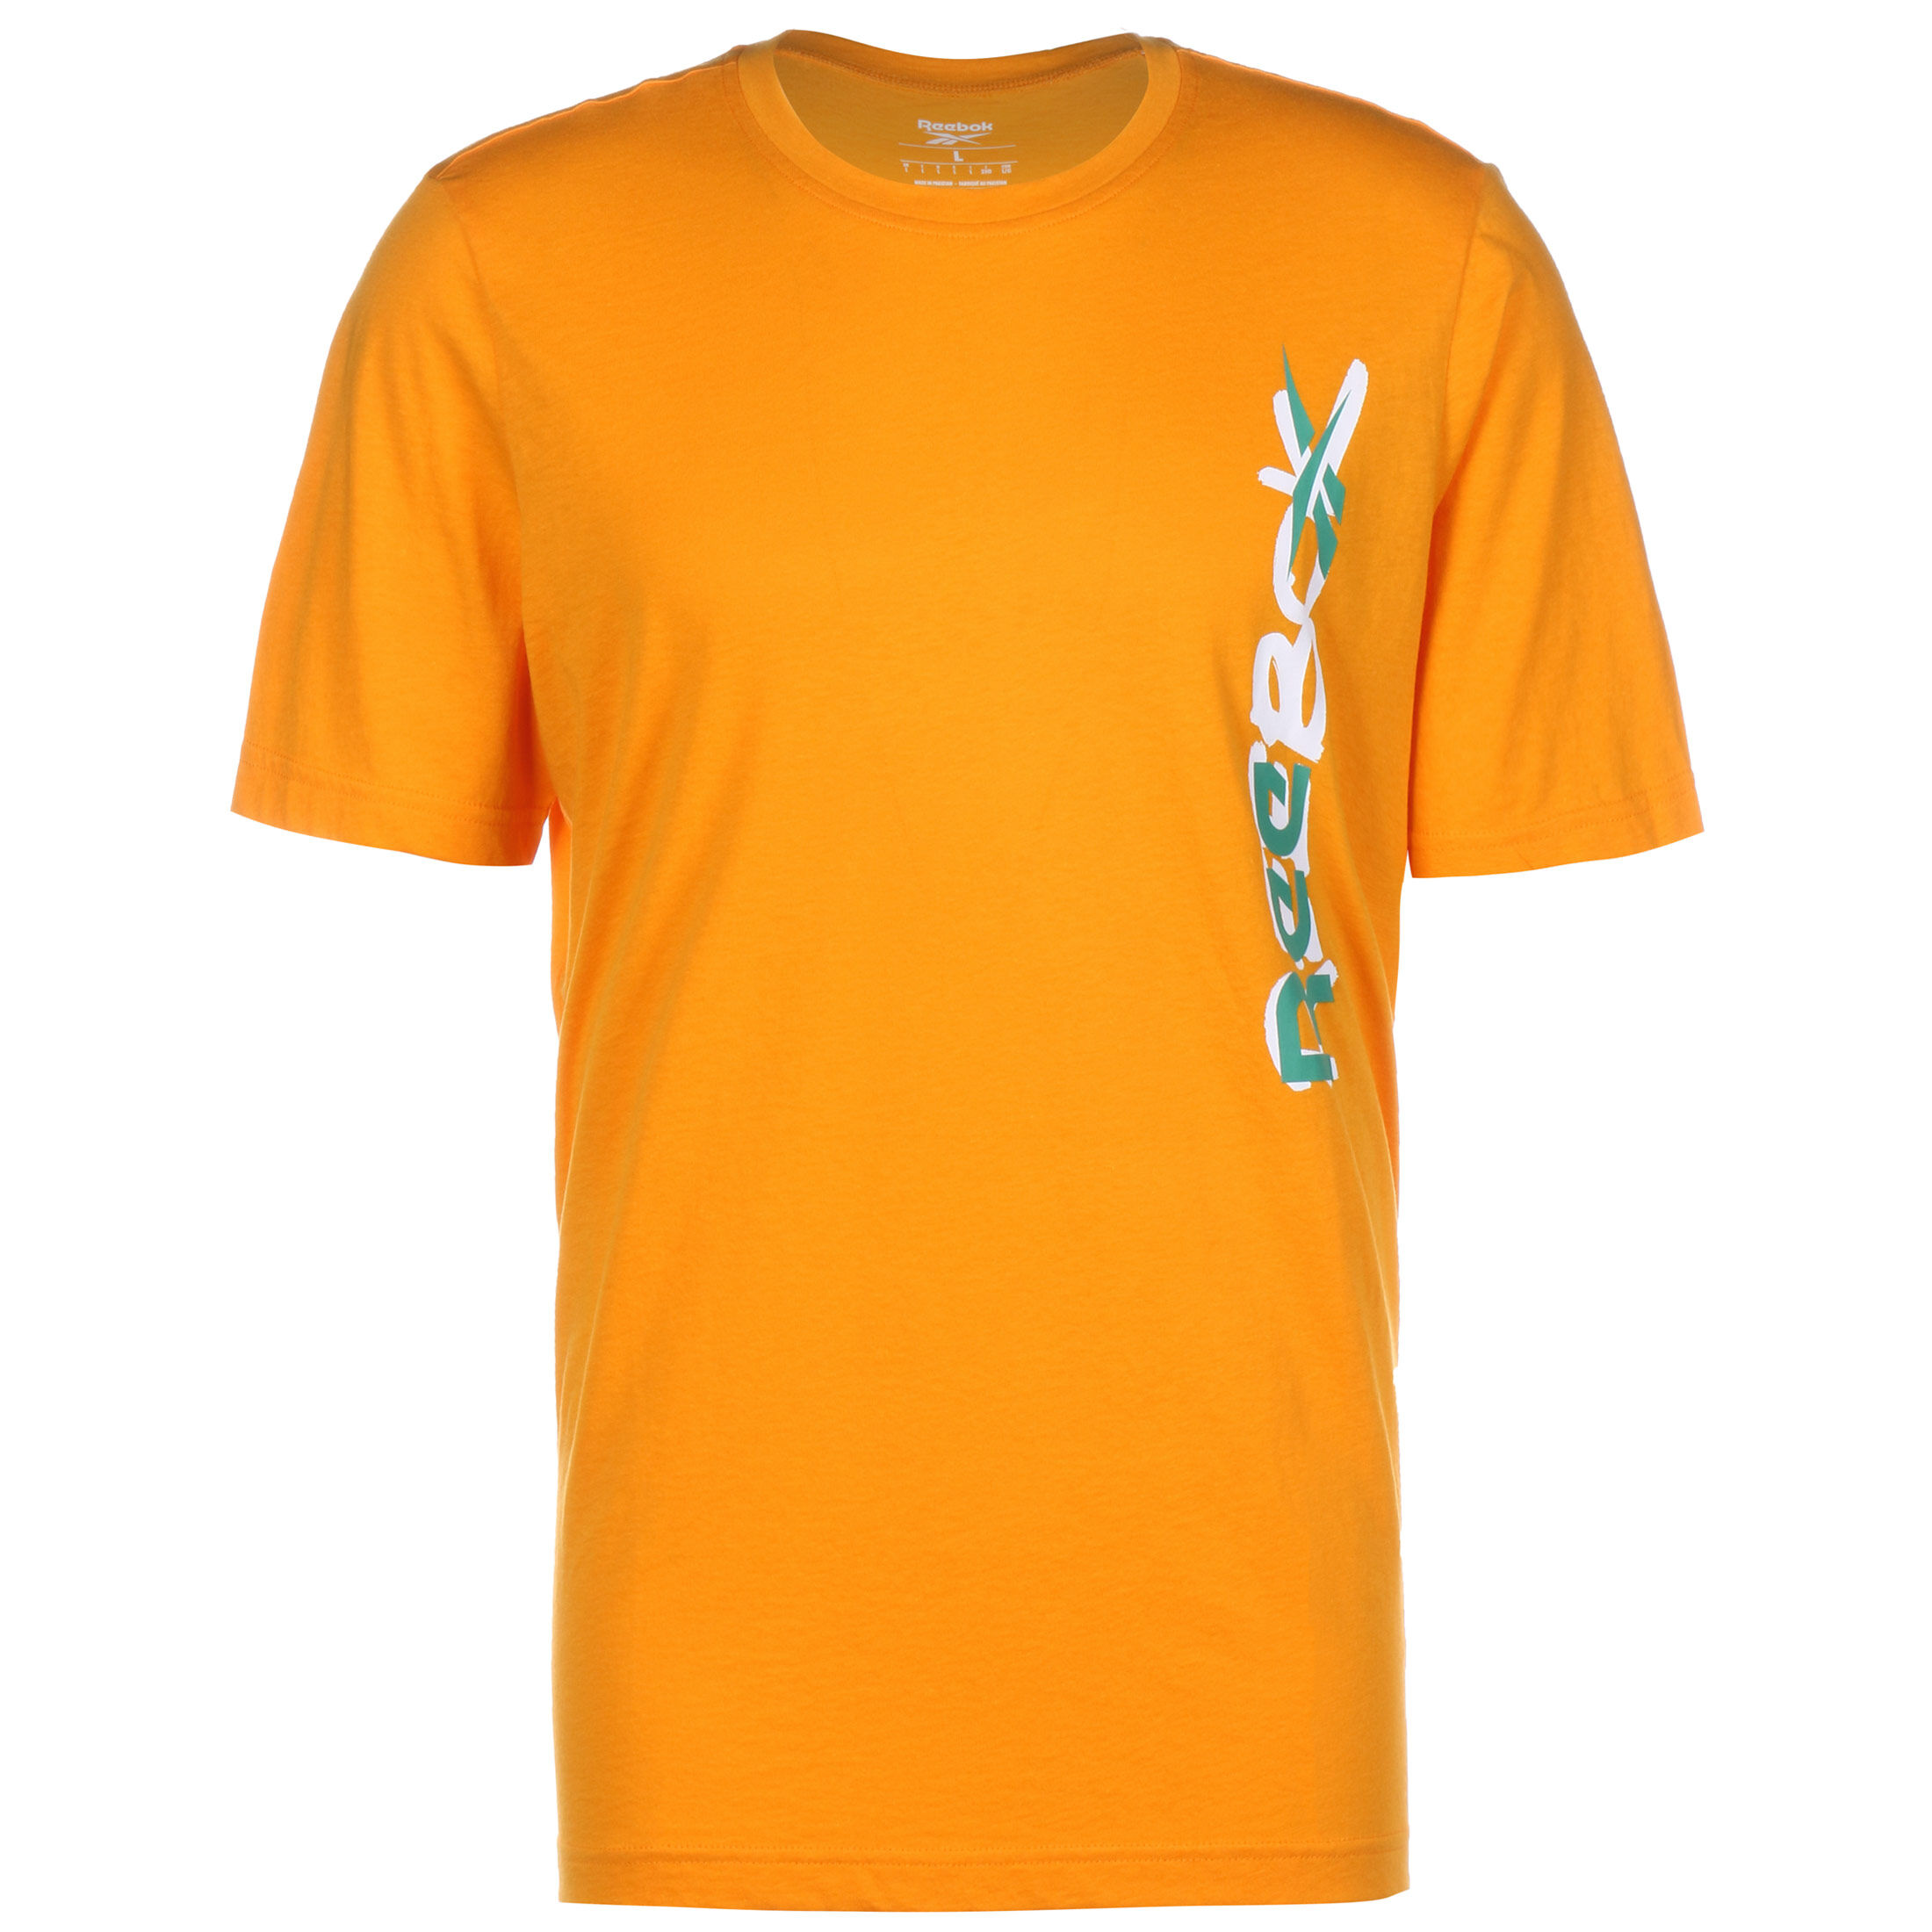 Футболка Reebok MYT, желтый футболка мужская reebok myt graphic бежевый